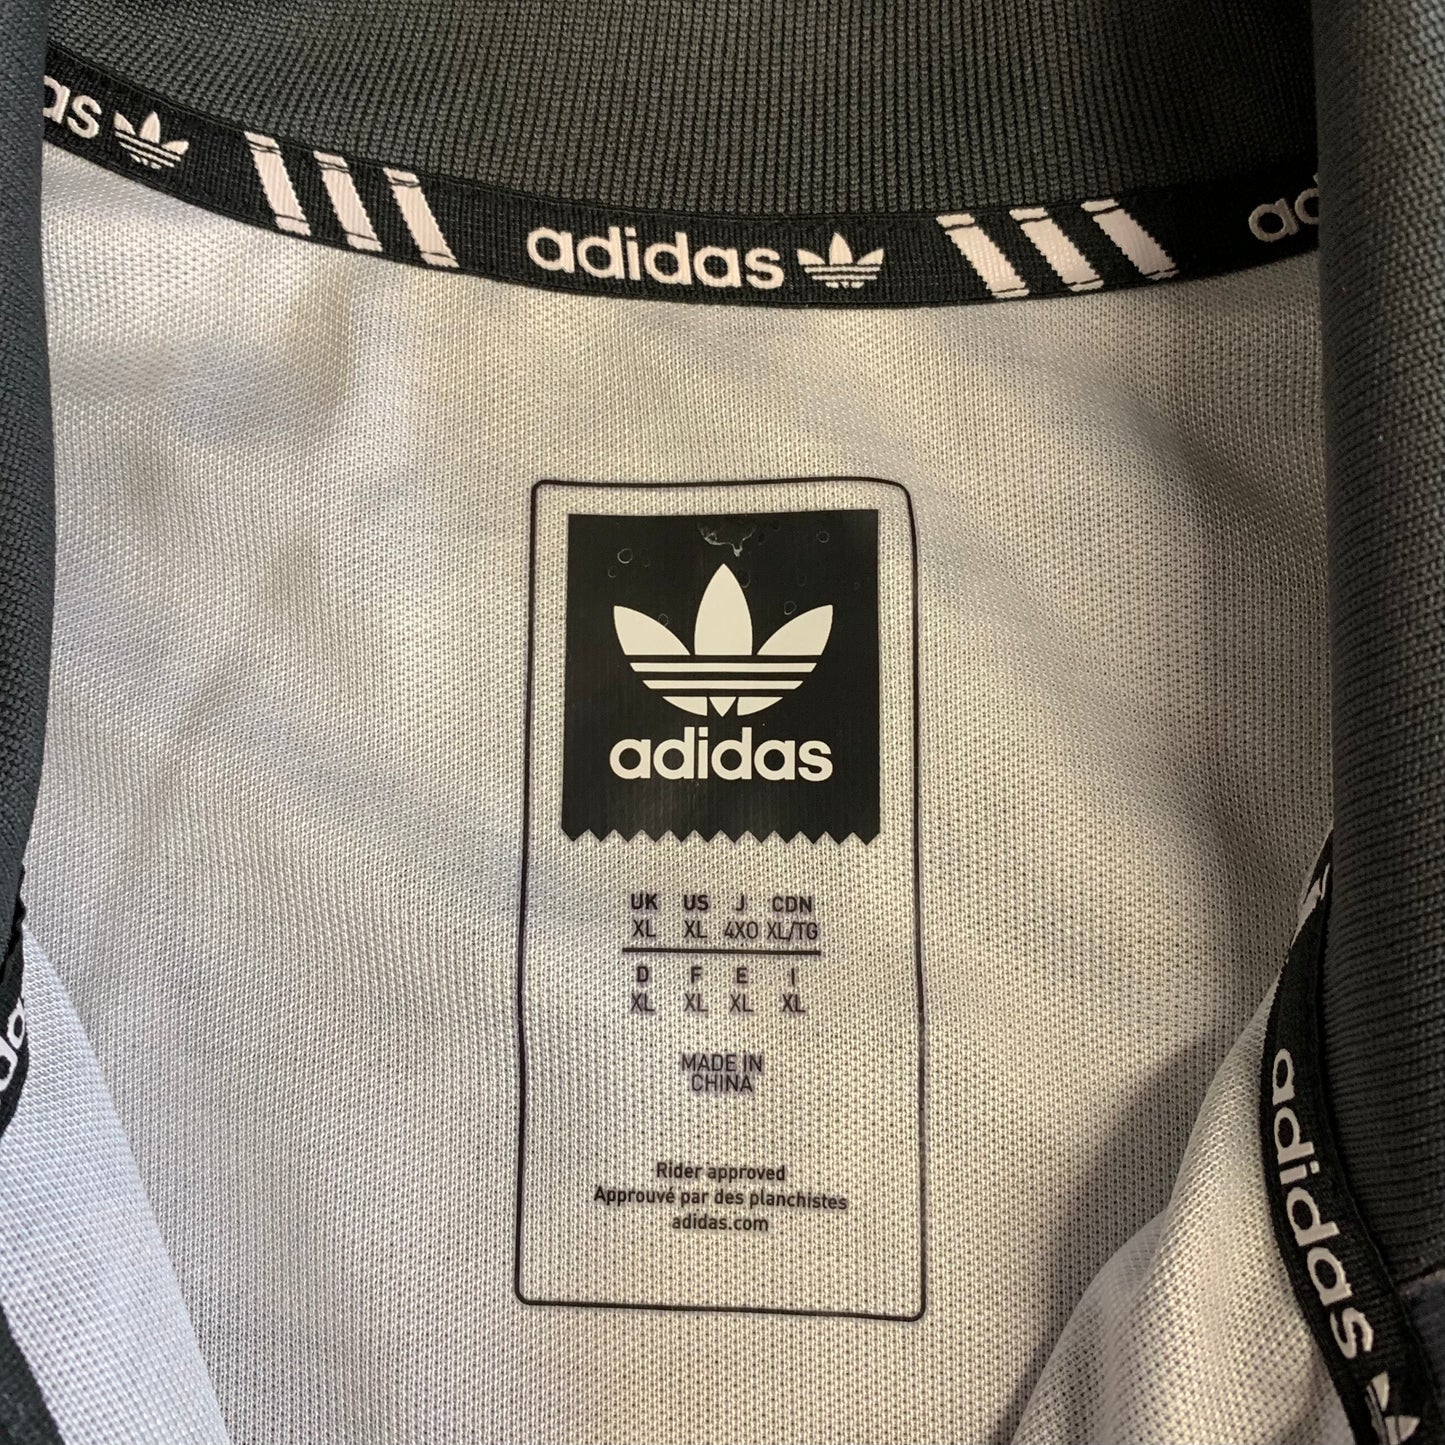 Adidas MHAK Skate Jacket XL